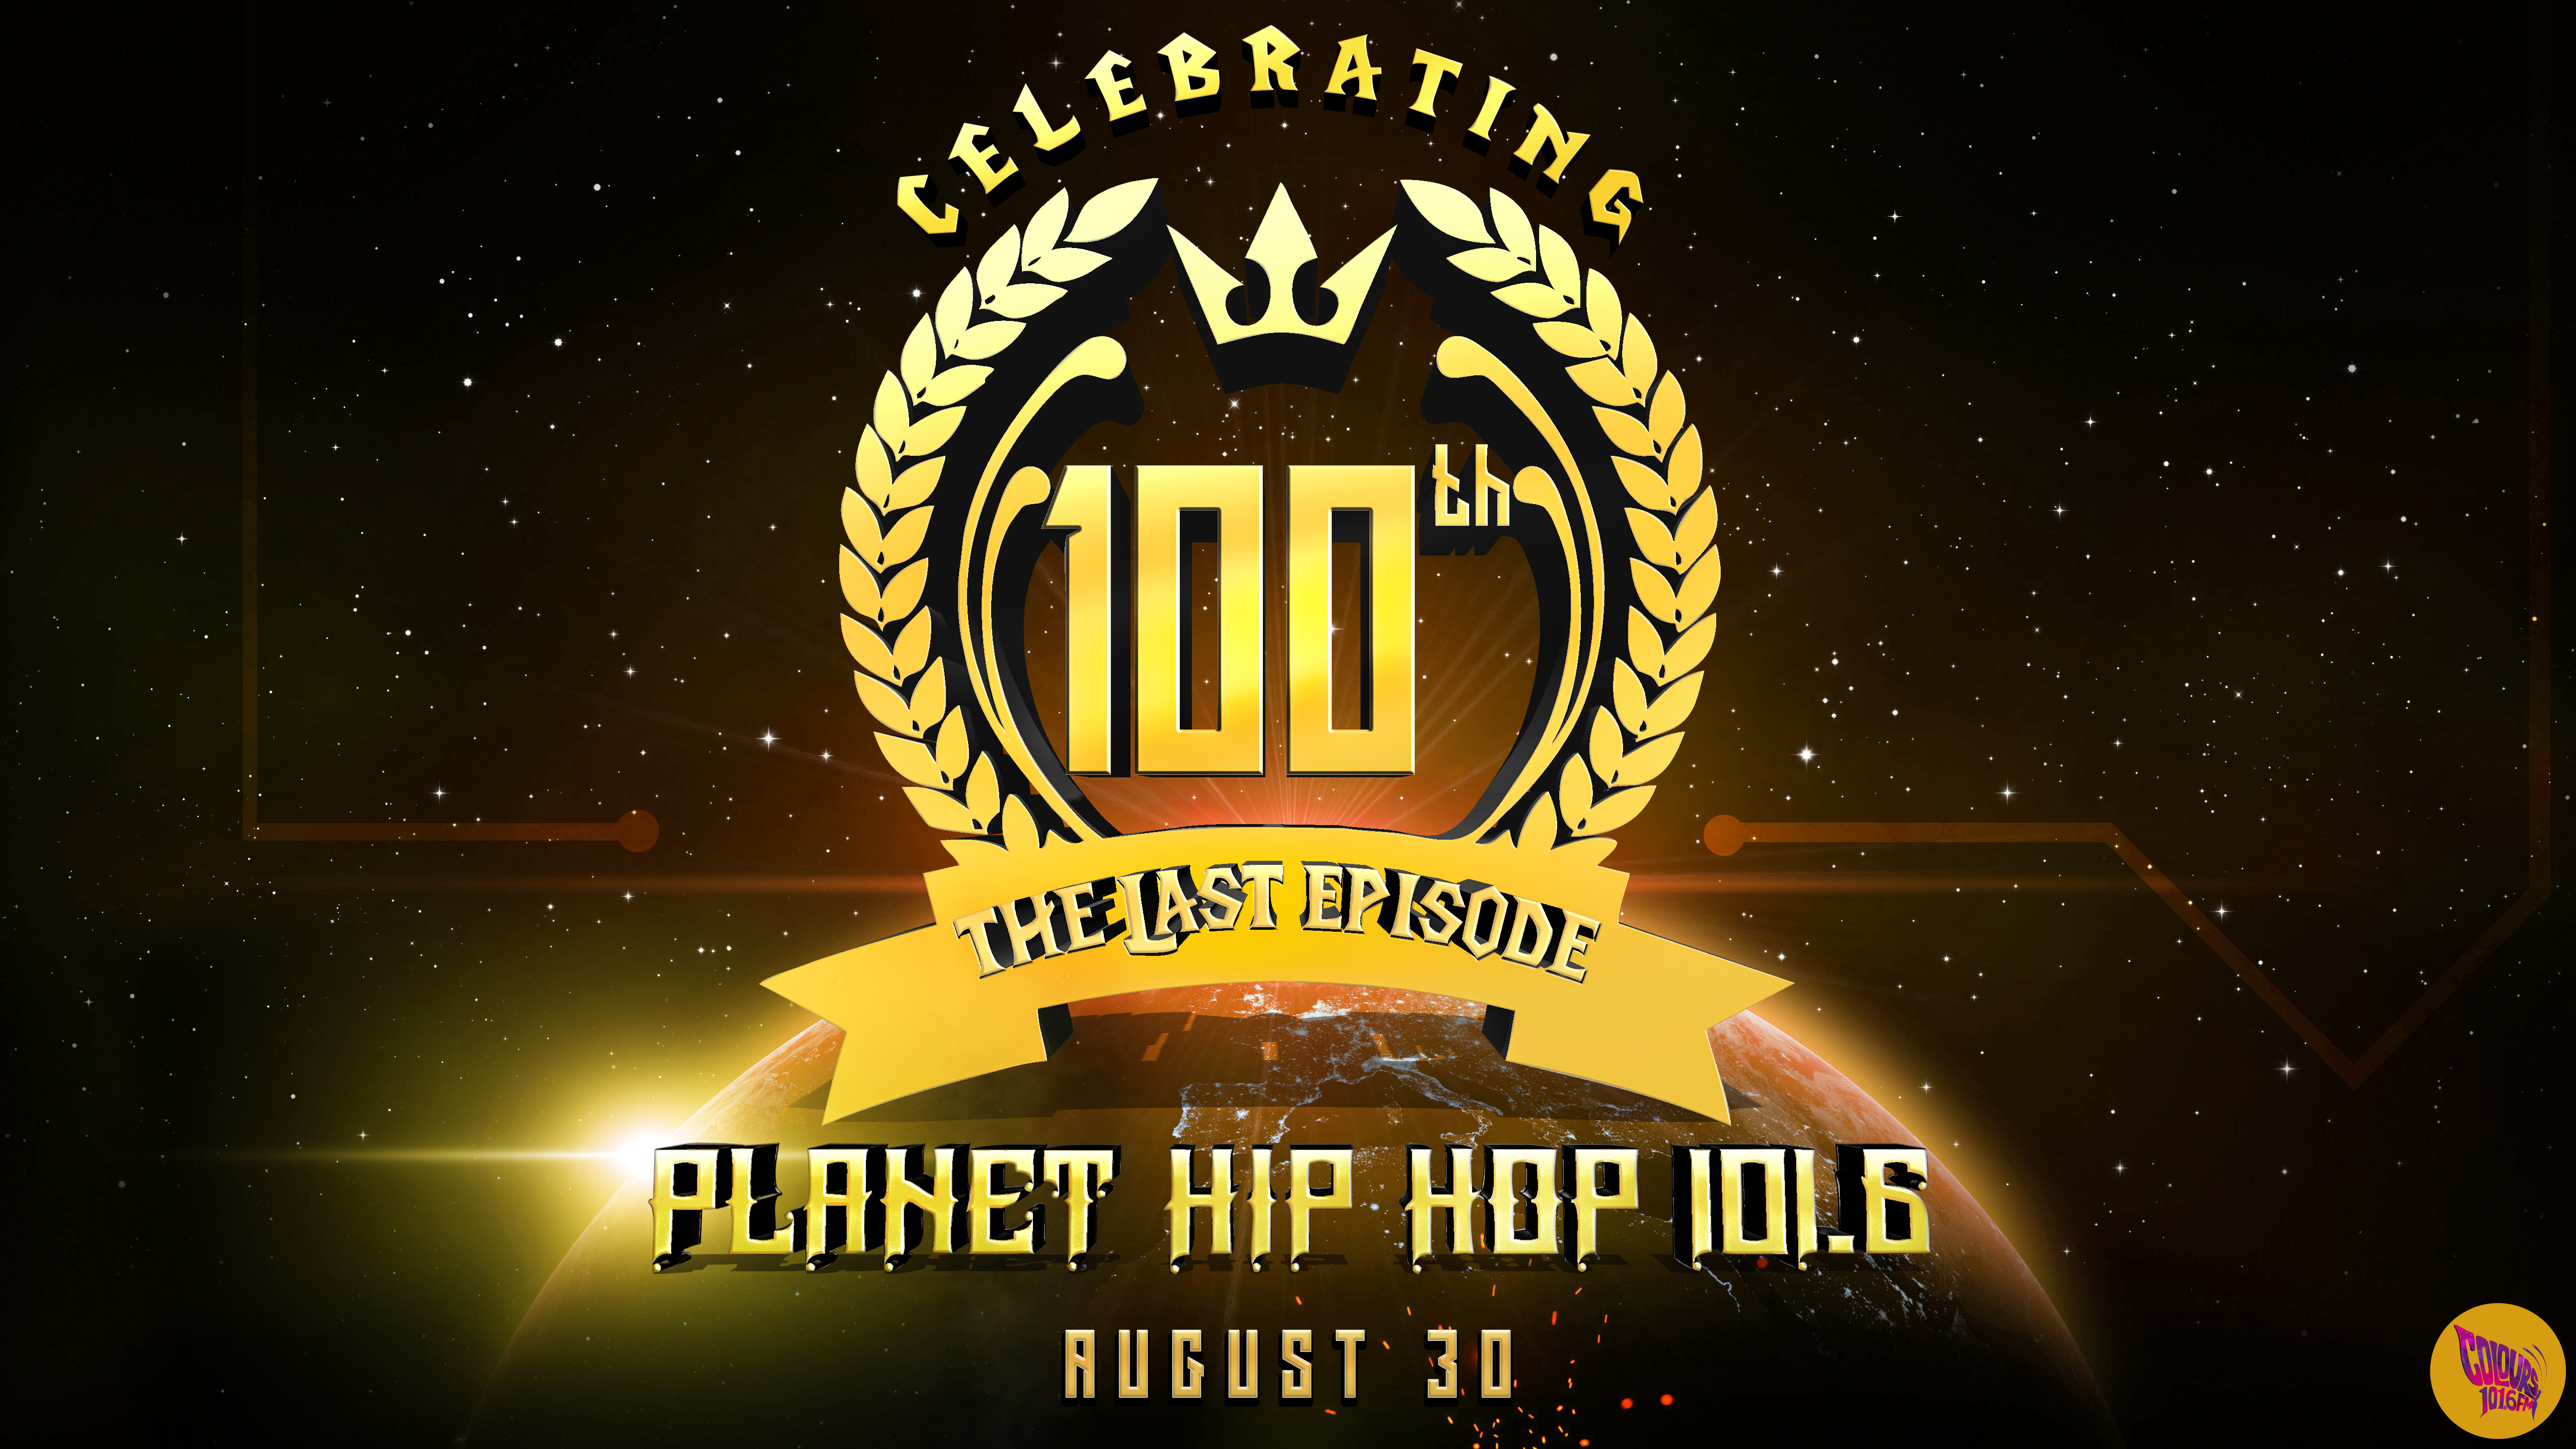 Planet hiphop 101.6 